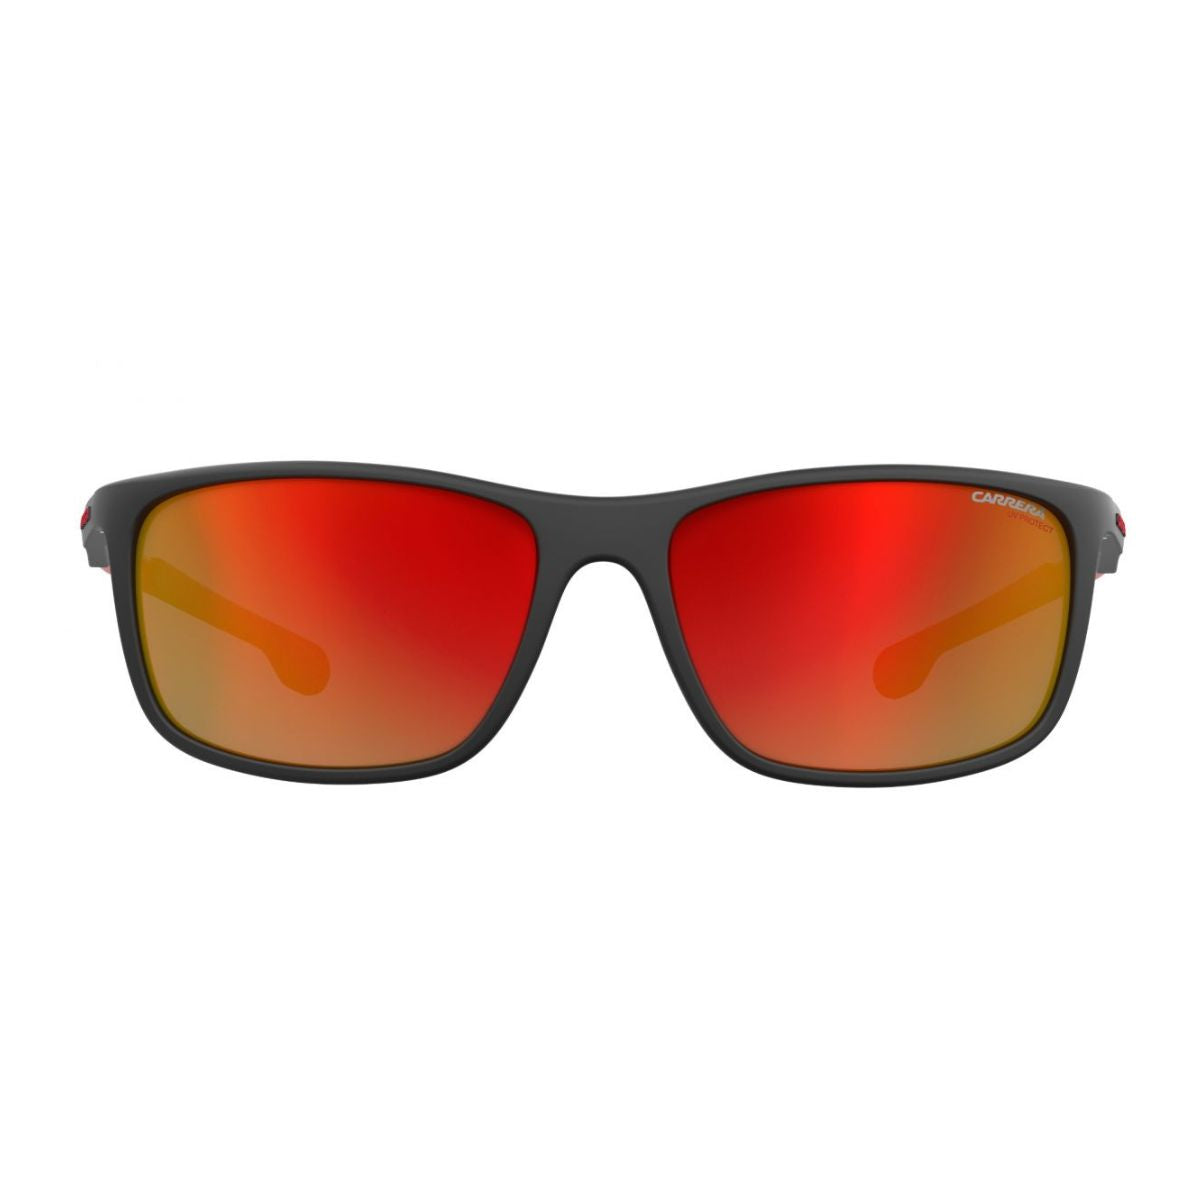 "Buy Carrera Sunglasses For Mens At Optorium"